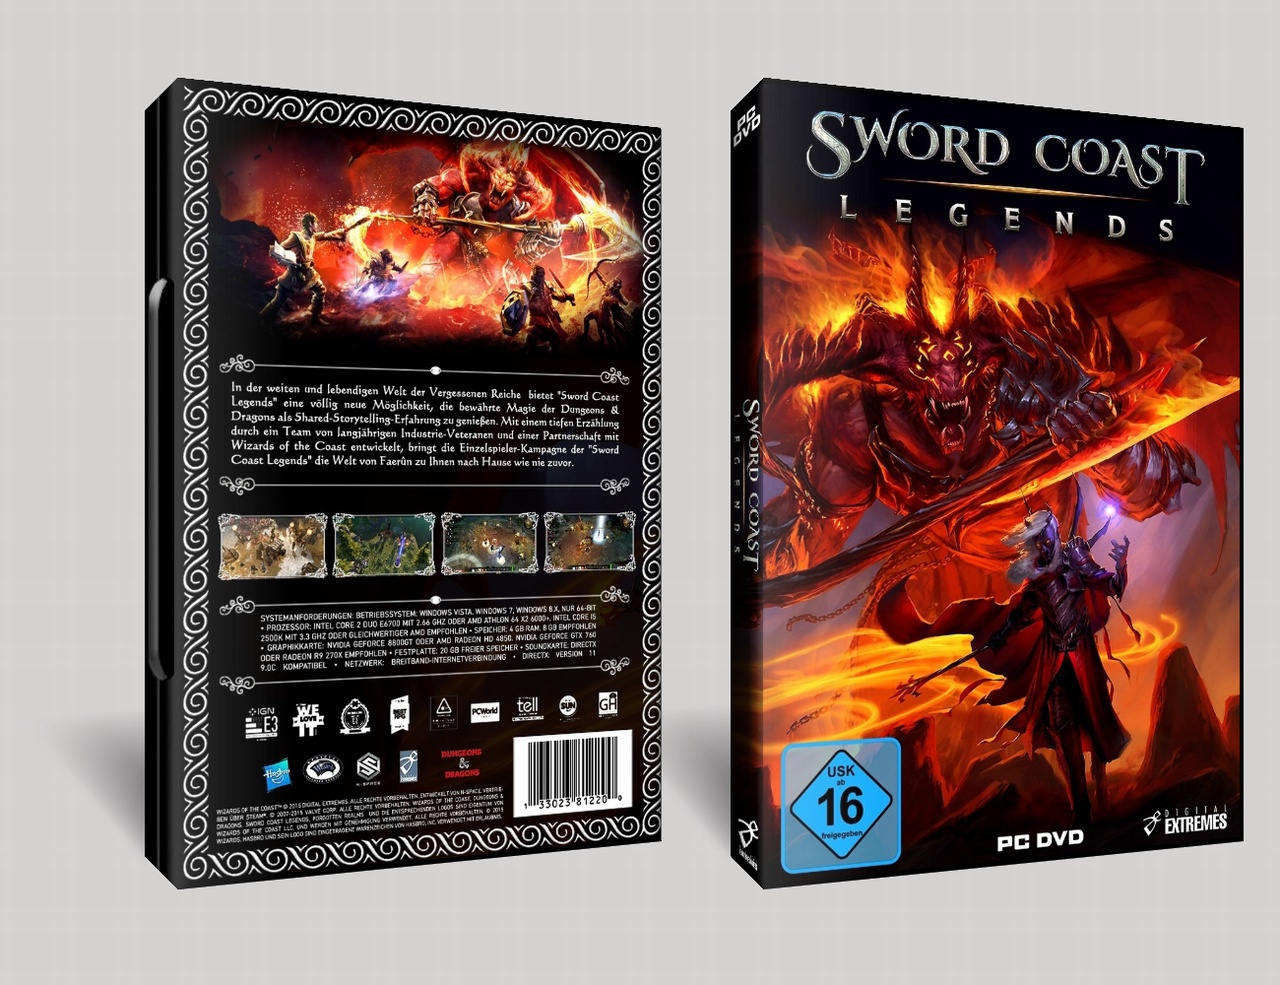 Sword Coast Legends box cover